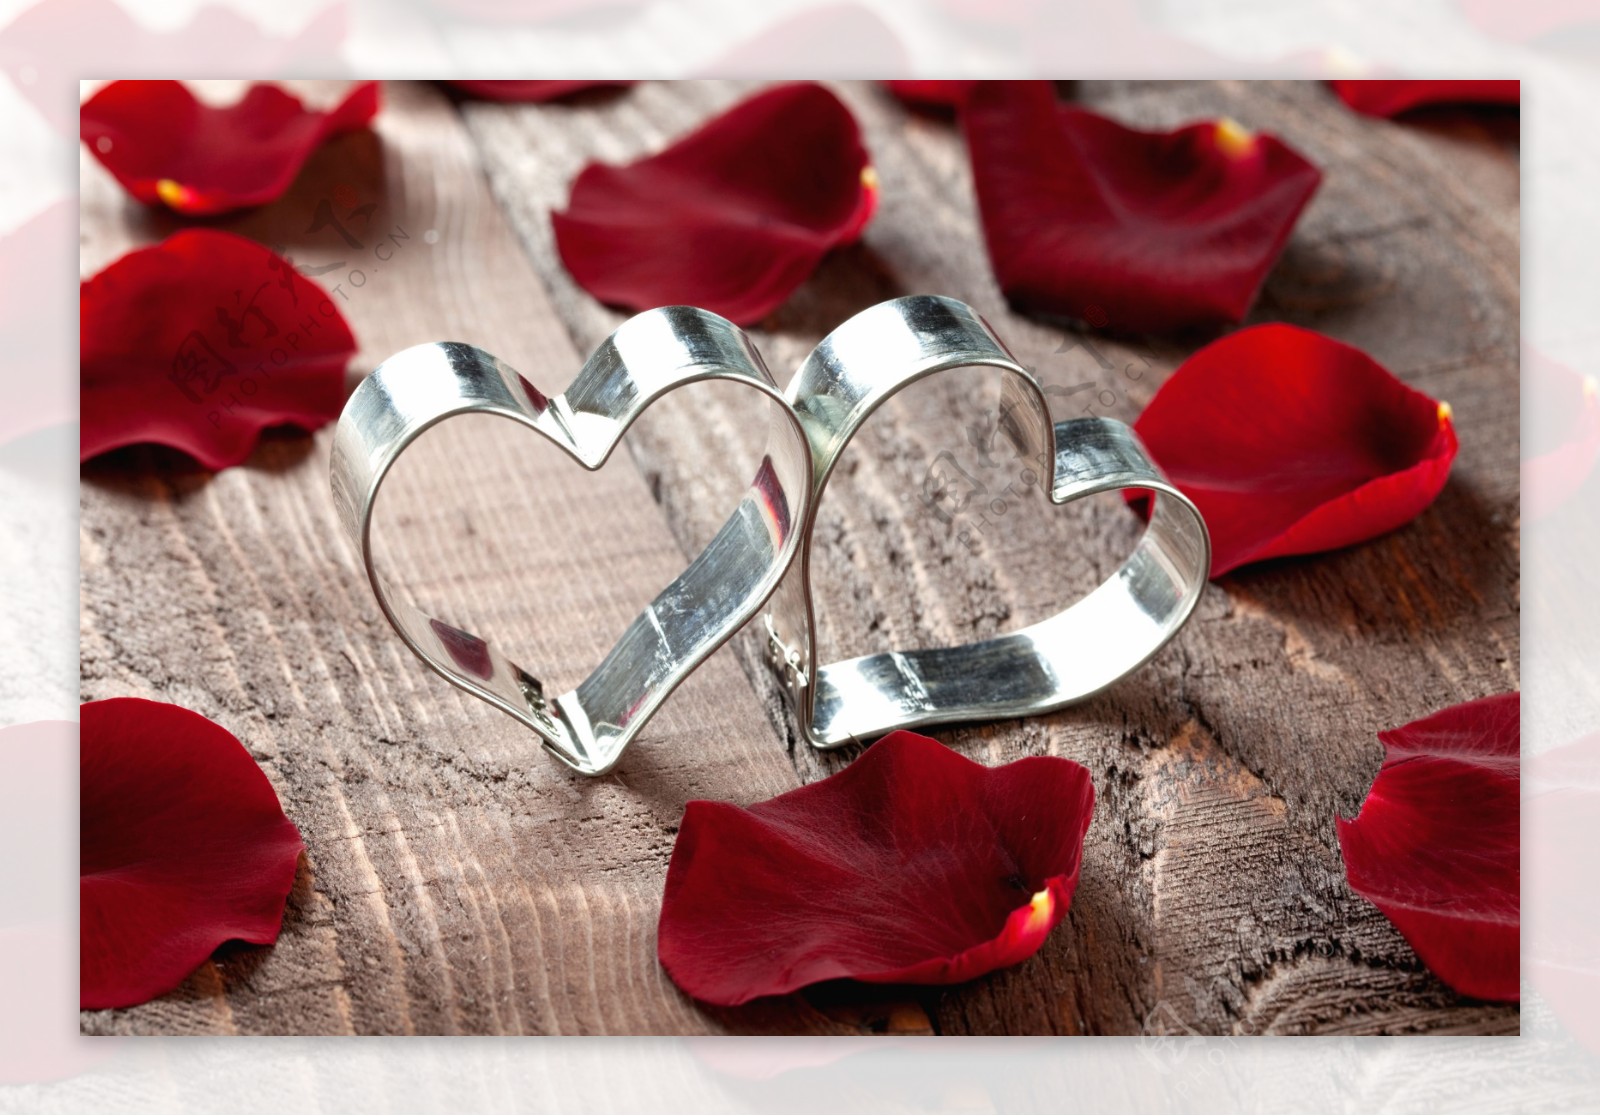 心形戒指和玫瑰花瓣图片